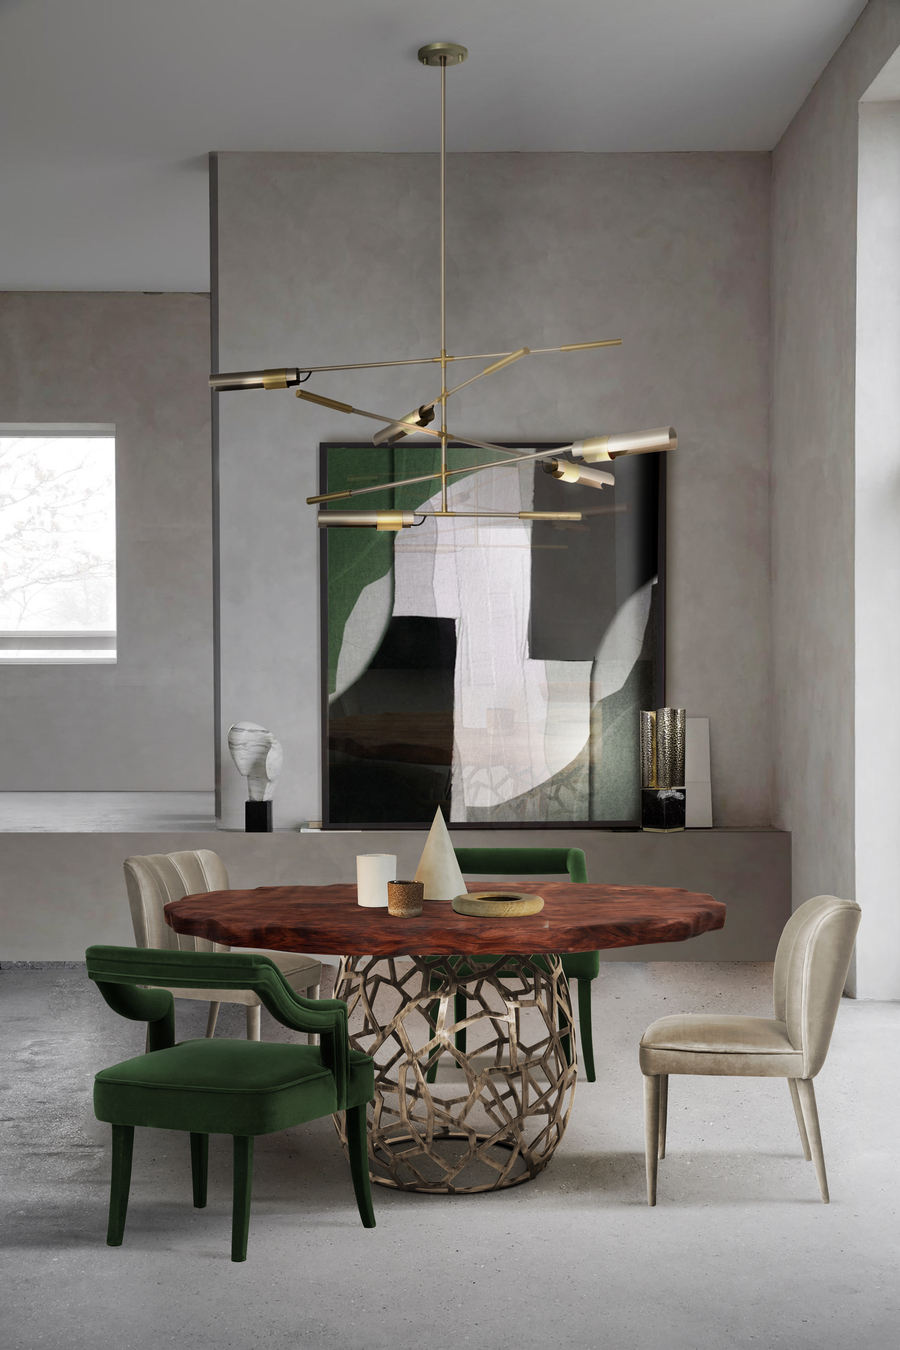 Superb Contemporary Decor To Uplift Your Dining Room Makeover, modern decor, interior decor, contemporary decor, contemporary design home inspiration ideas